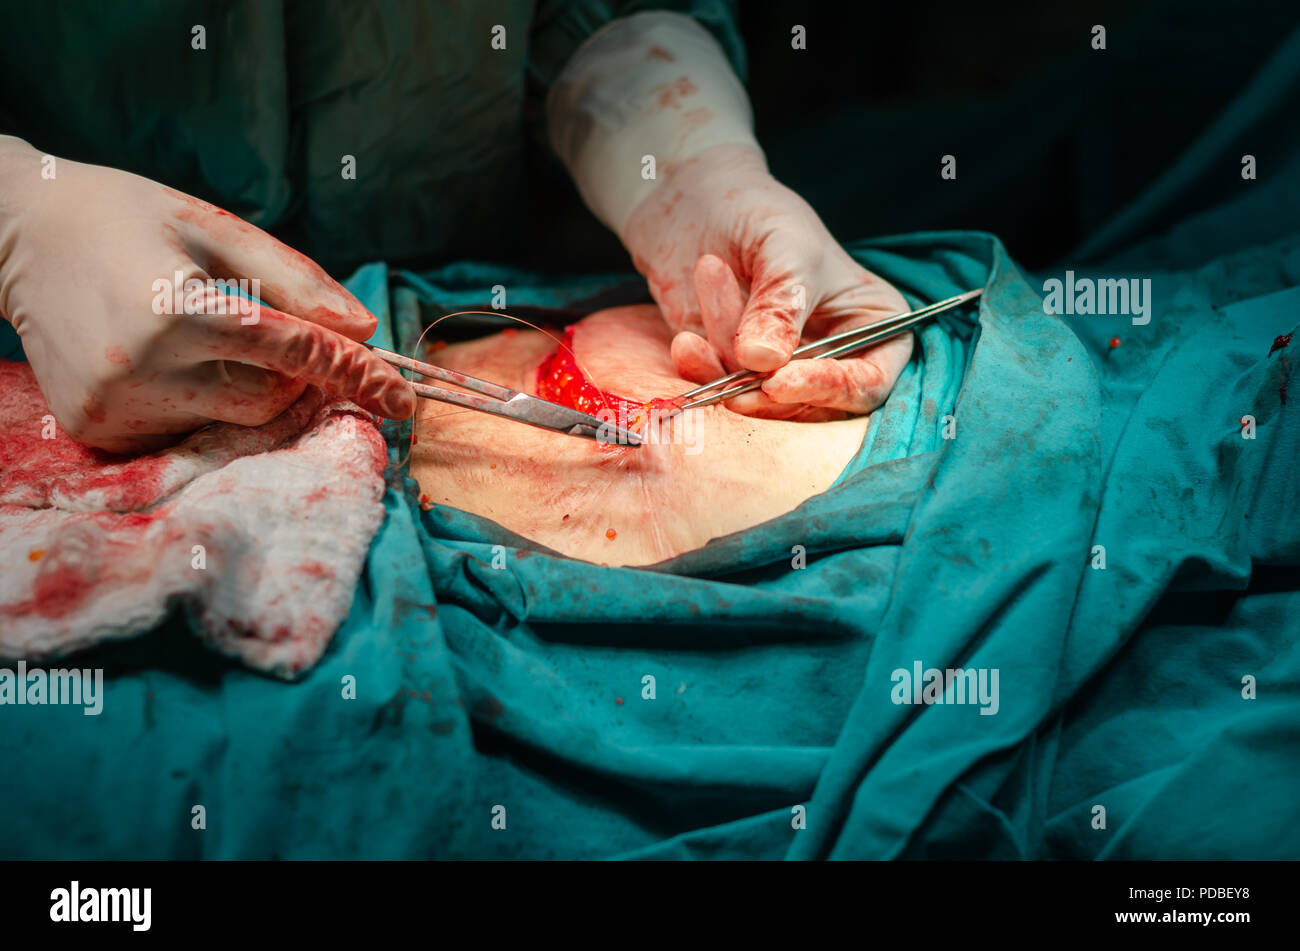 Un chirurgien est un assemblage blessure après une opération dans un hôpital Banque D'Images